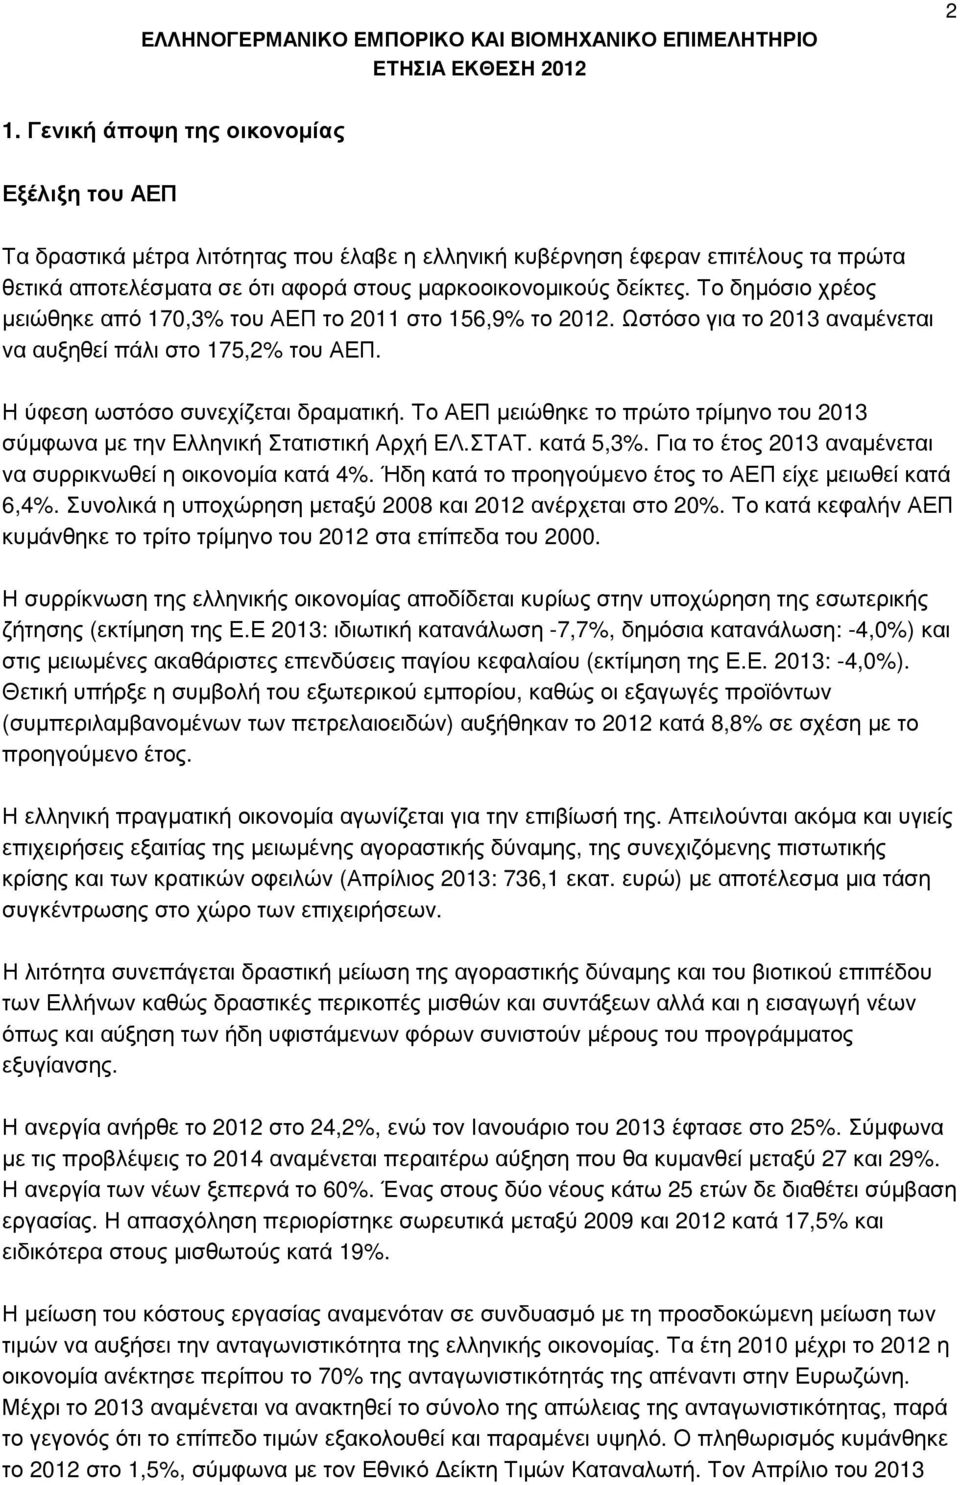 Το ΑΕΠ µειώθηκε το πρώτο τρίµηνο του 2013 σύµφωνα µε την Ελληνική Στατιστική Αρχή ΕΛ.ΣΤΑΤ. κατά 5,3%. Για το έτος 2013 αναµένεται να συρρικνωθεί η οικονοµία κατά 4%.